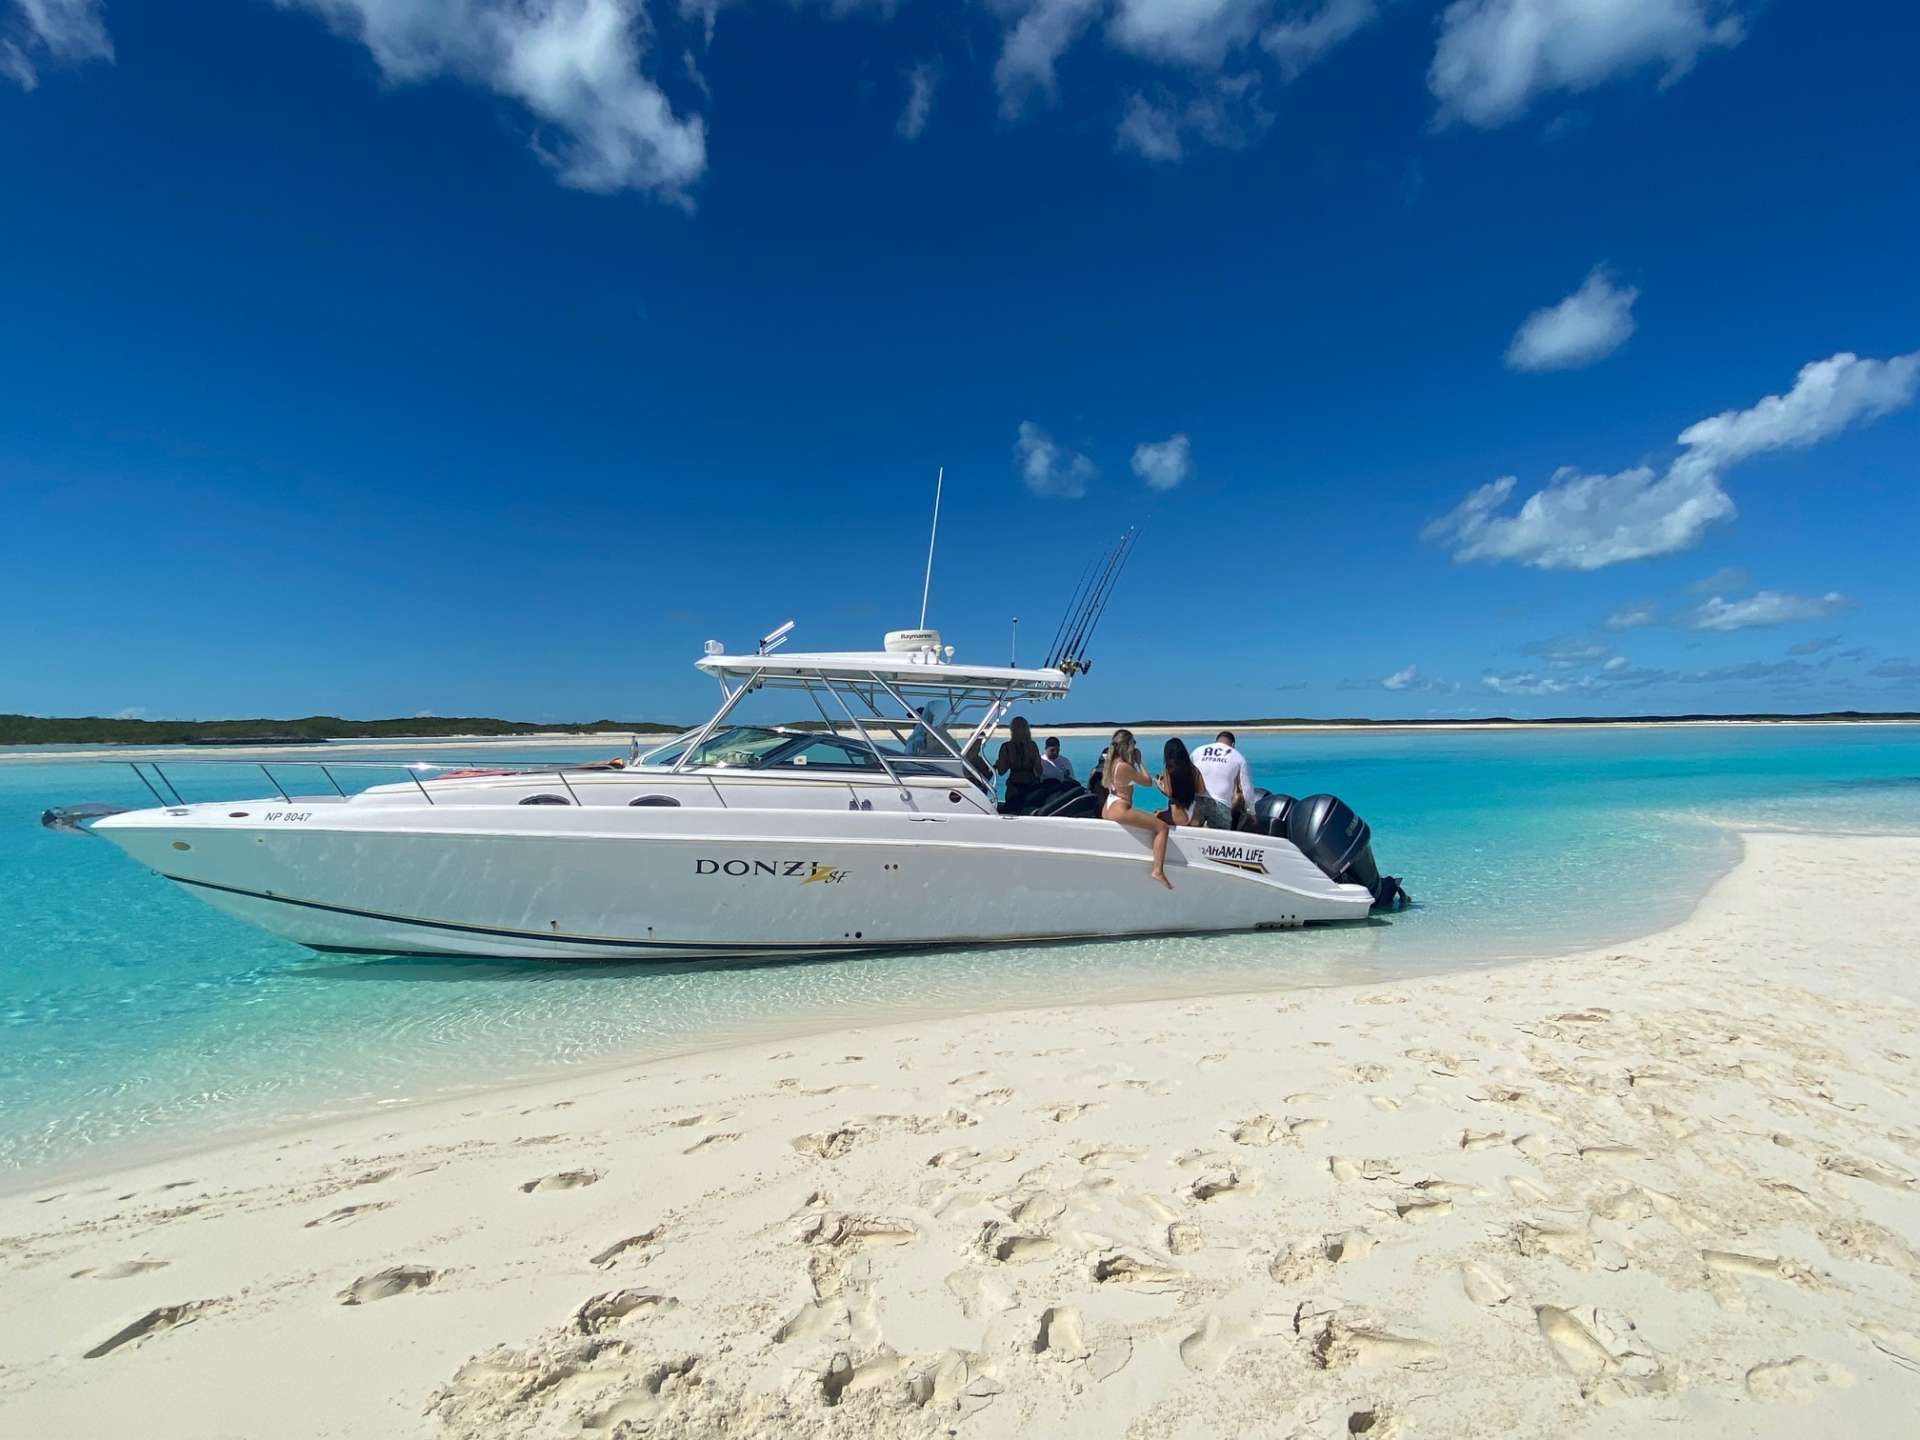 Zsf - Yacht Charter Nassau & Boat hire in Bahamas New Providence Nassau Palm Cay One Marina 1